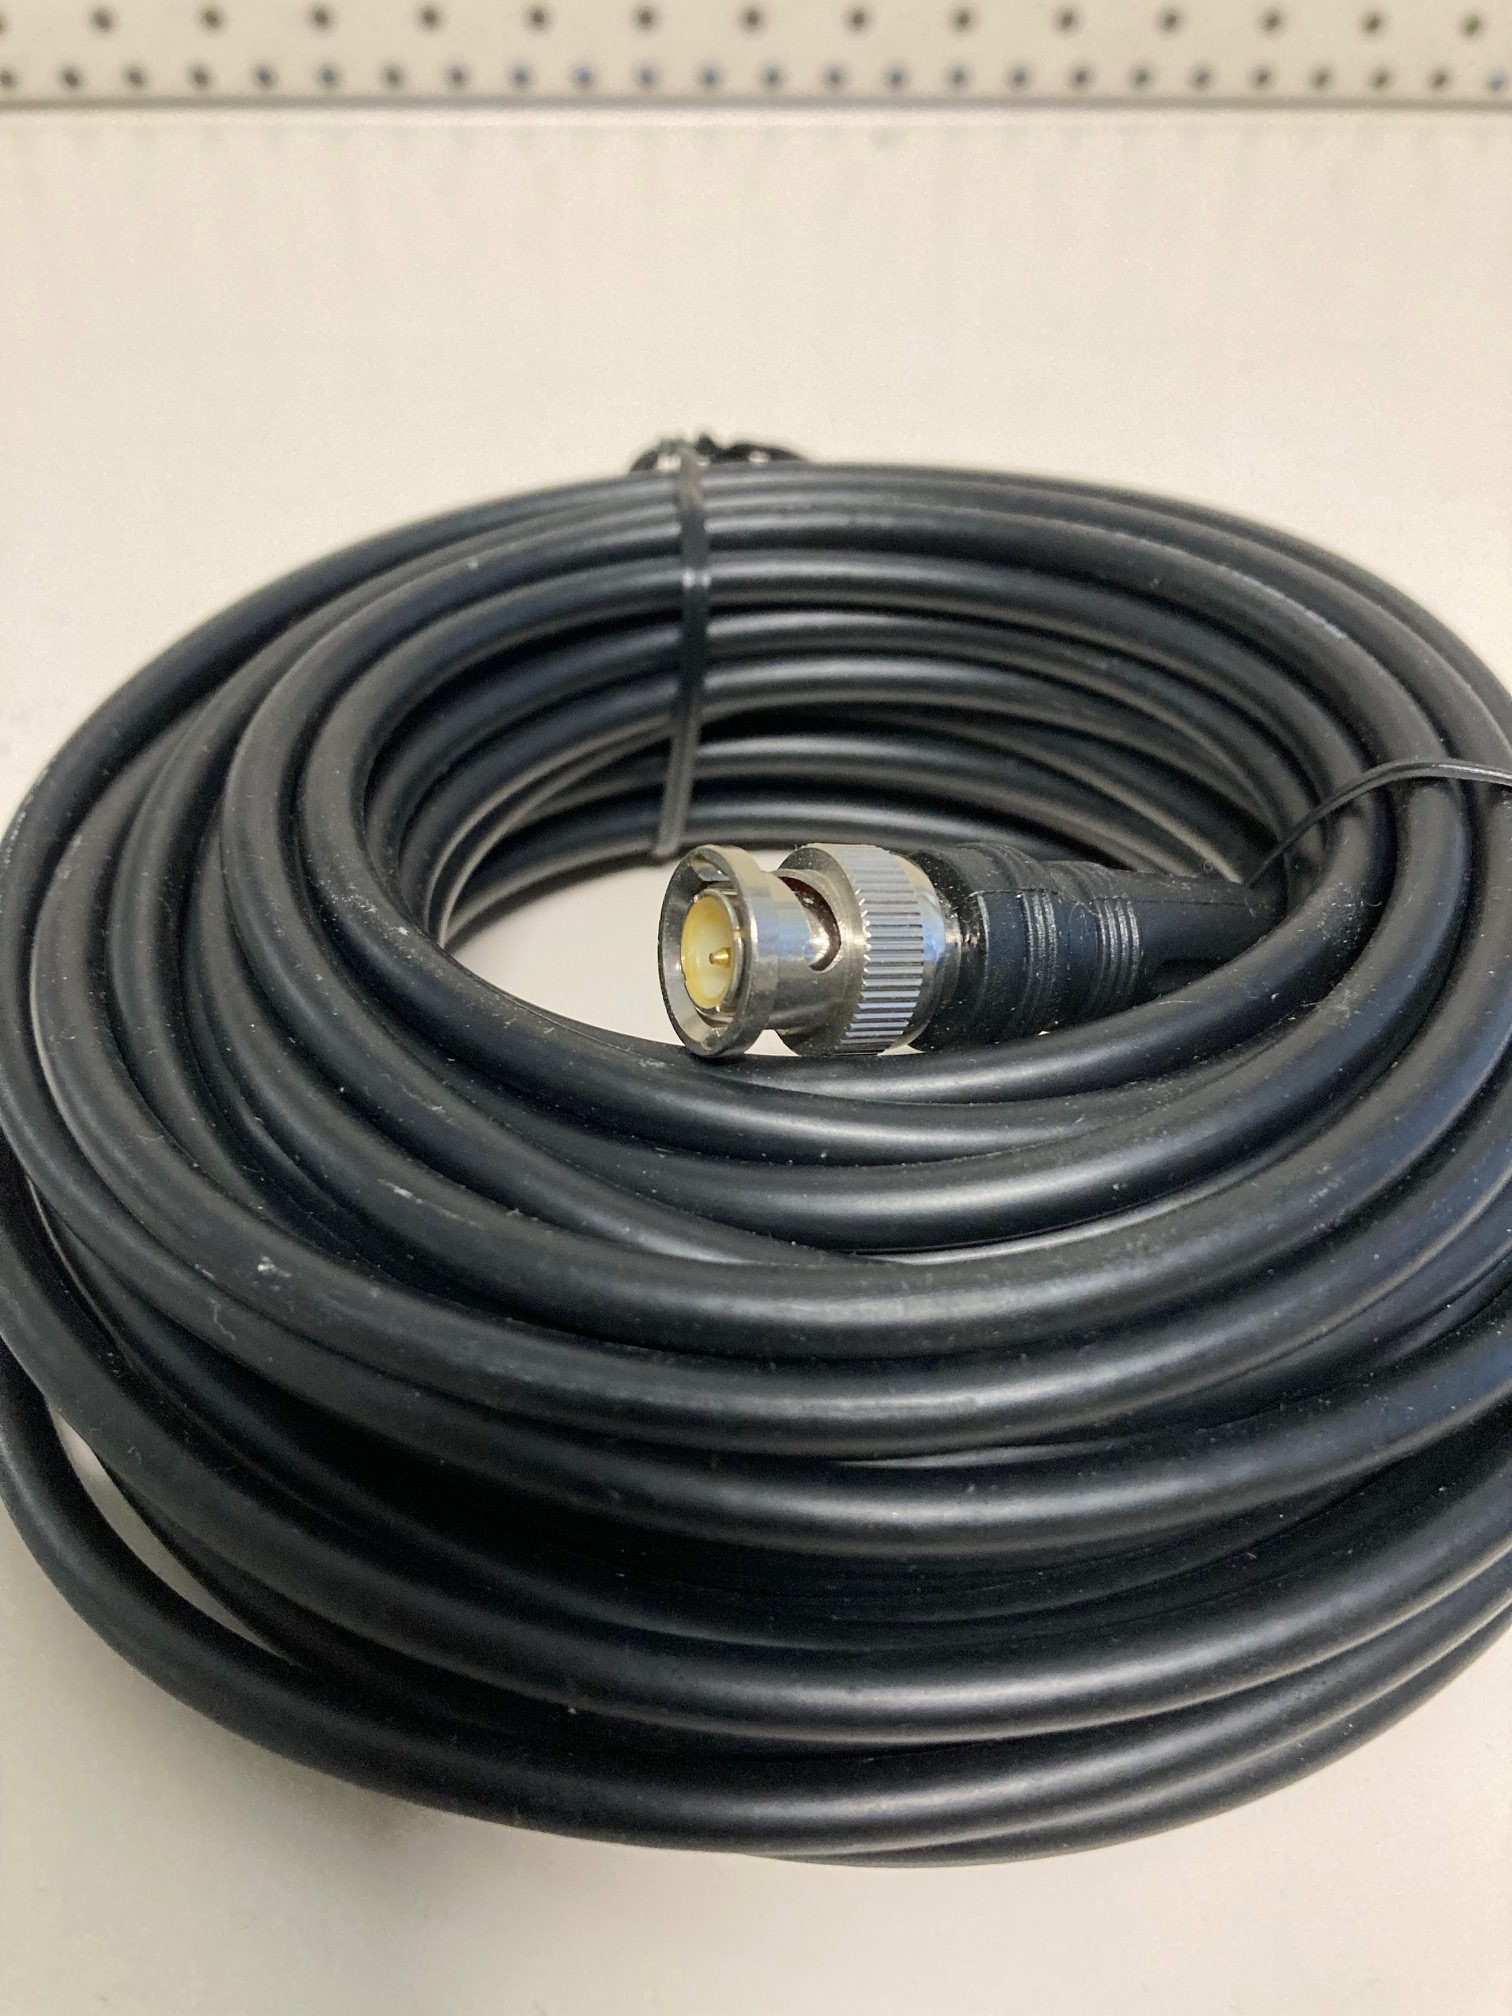 BNC connector met ca. 10 meter coaxkabel